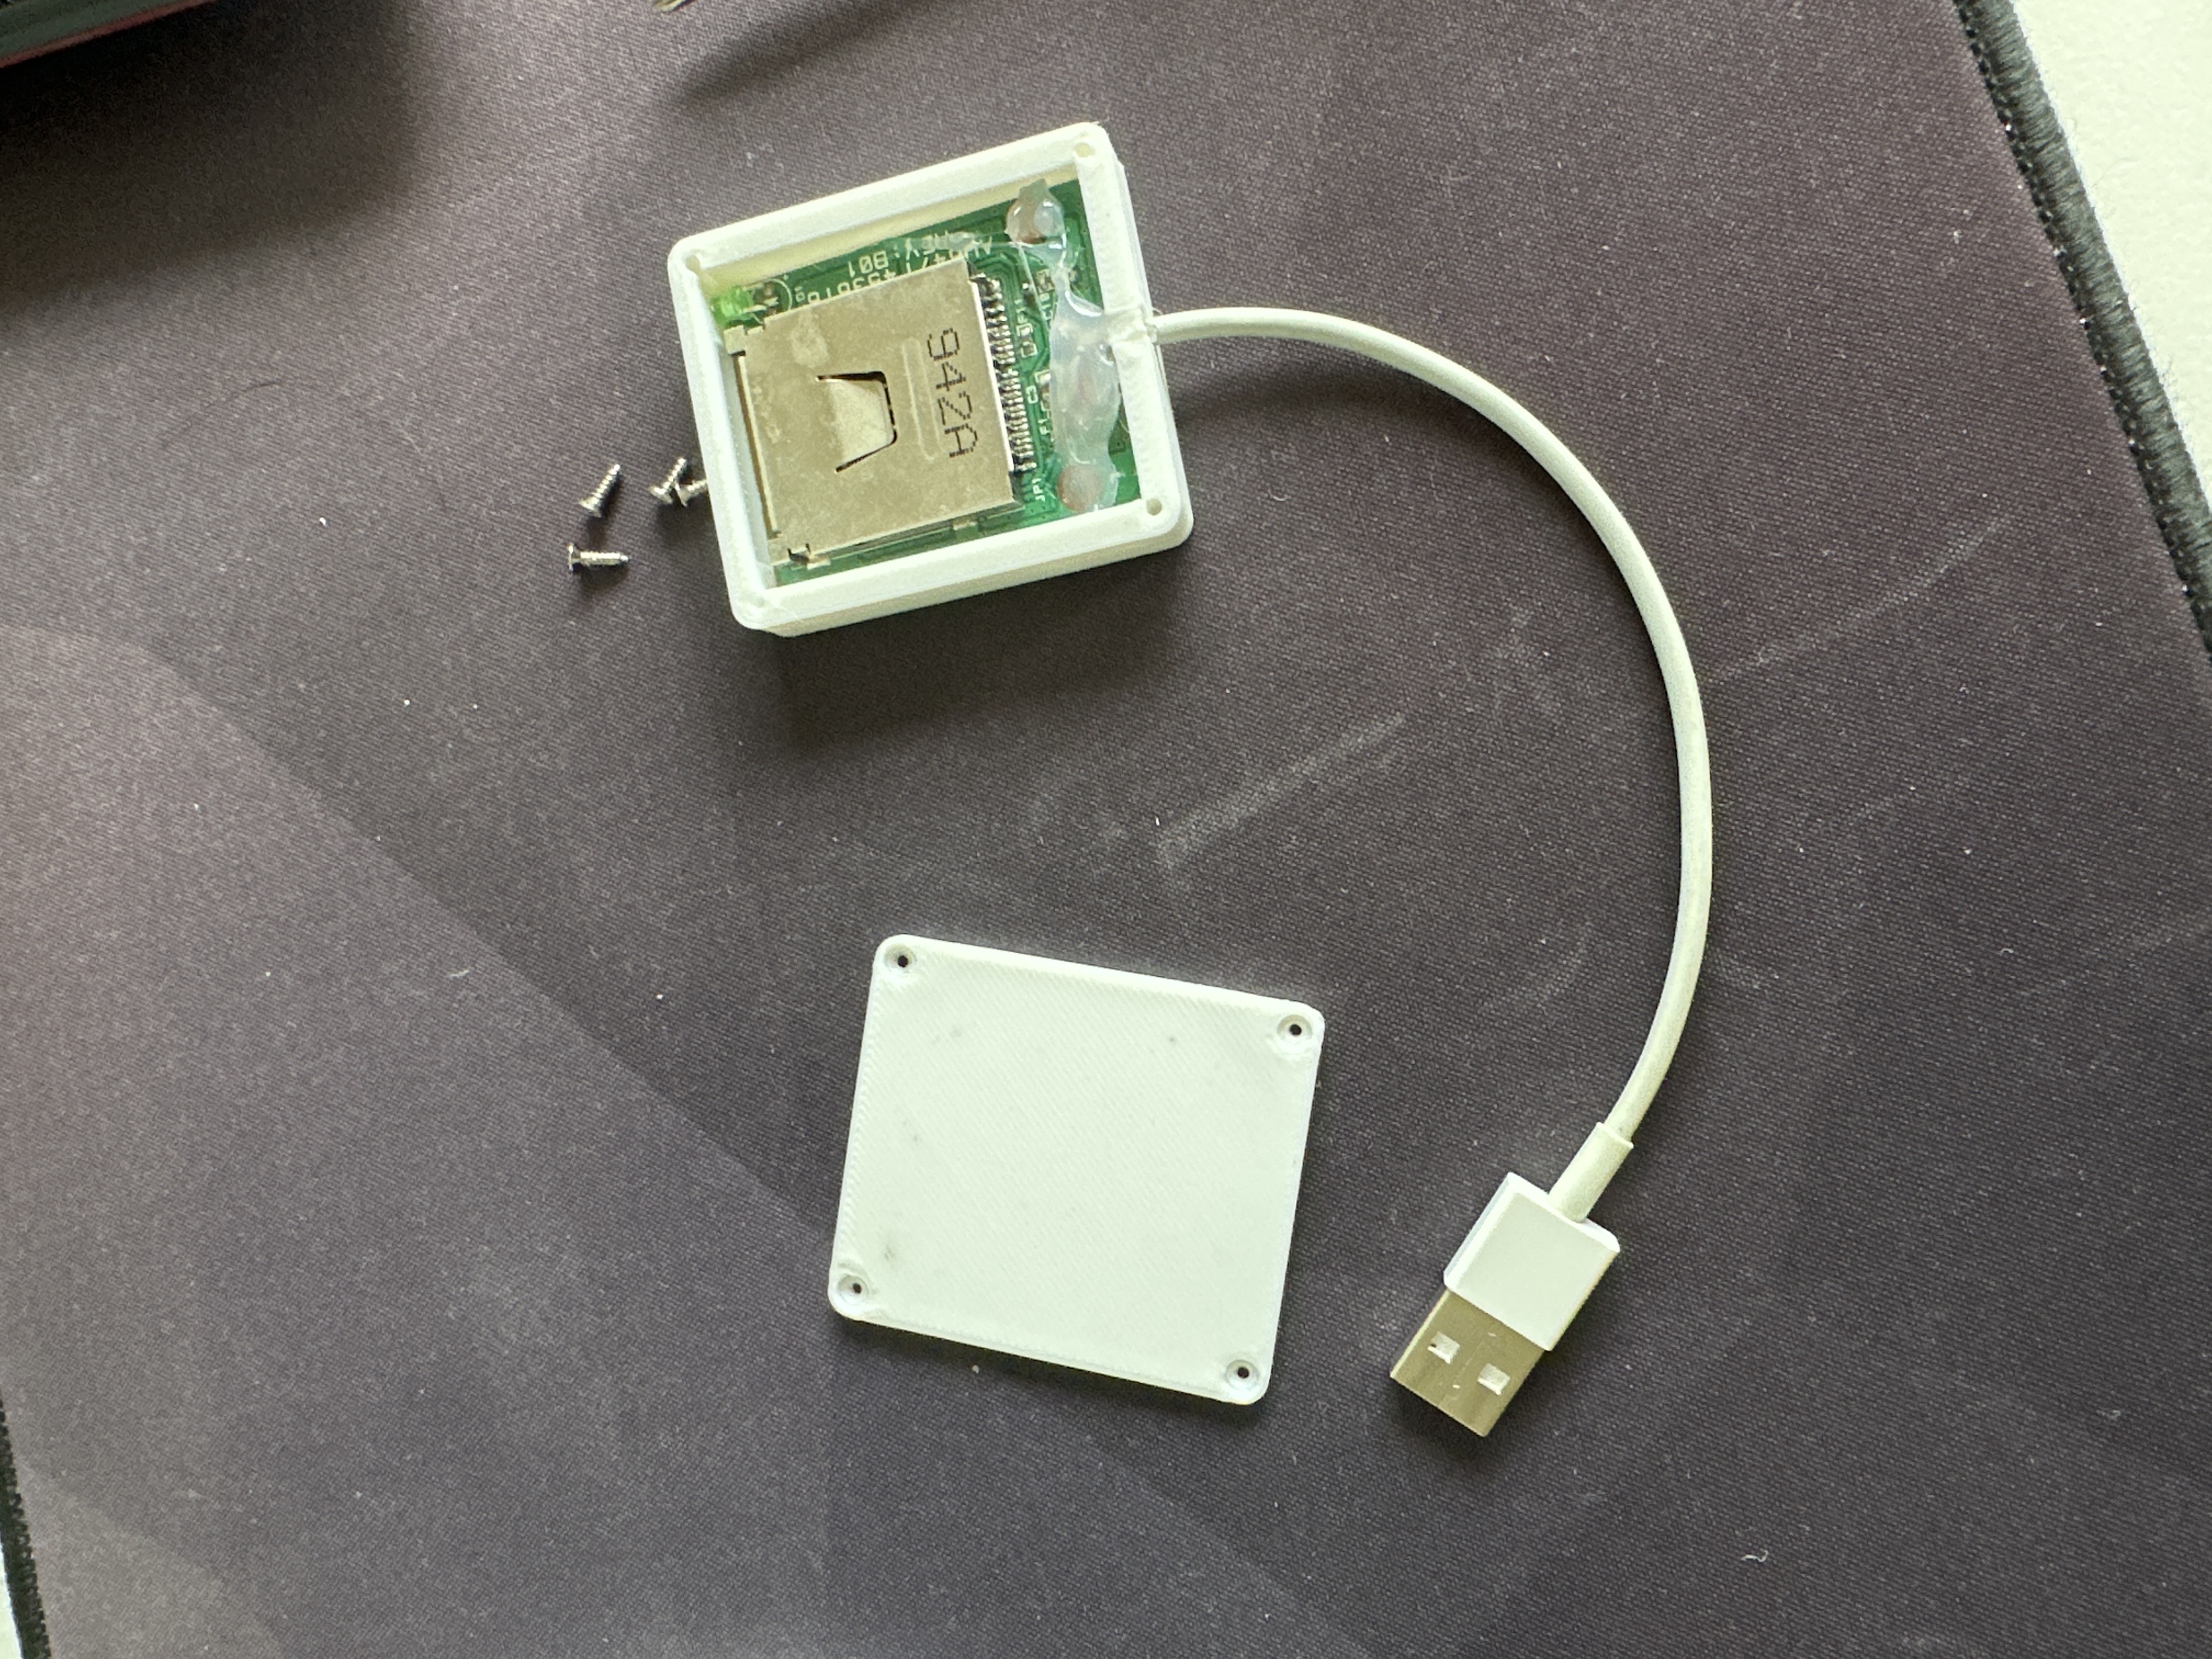 SD card reader case